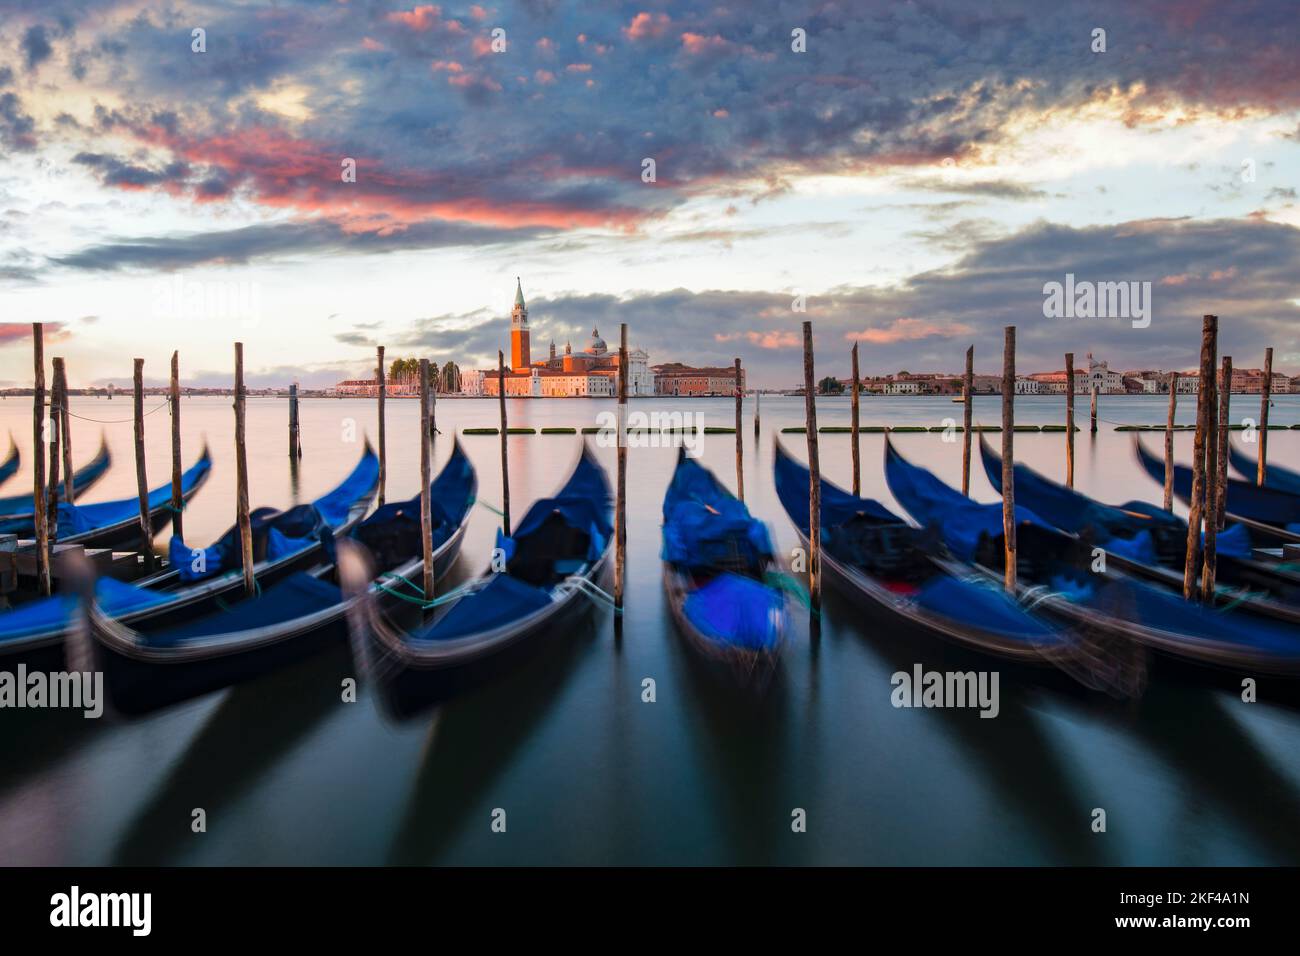 Gondeln vor der Piazzetta an der Lagune am Markusplatz bei Sonnenaufgang, hinten Insel San Giorgio, Venedig, Italien Stock Photo